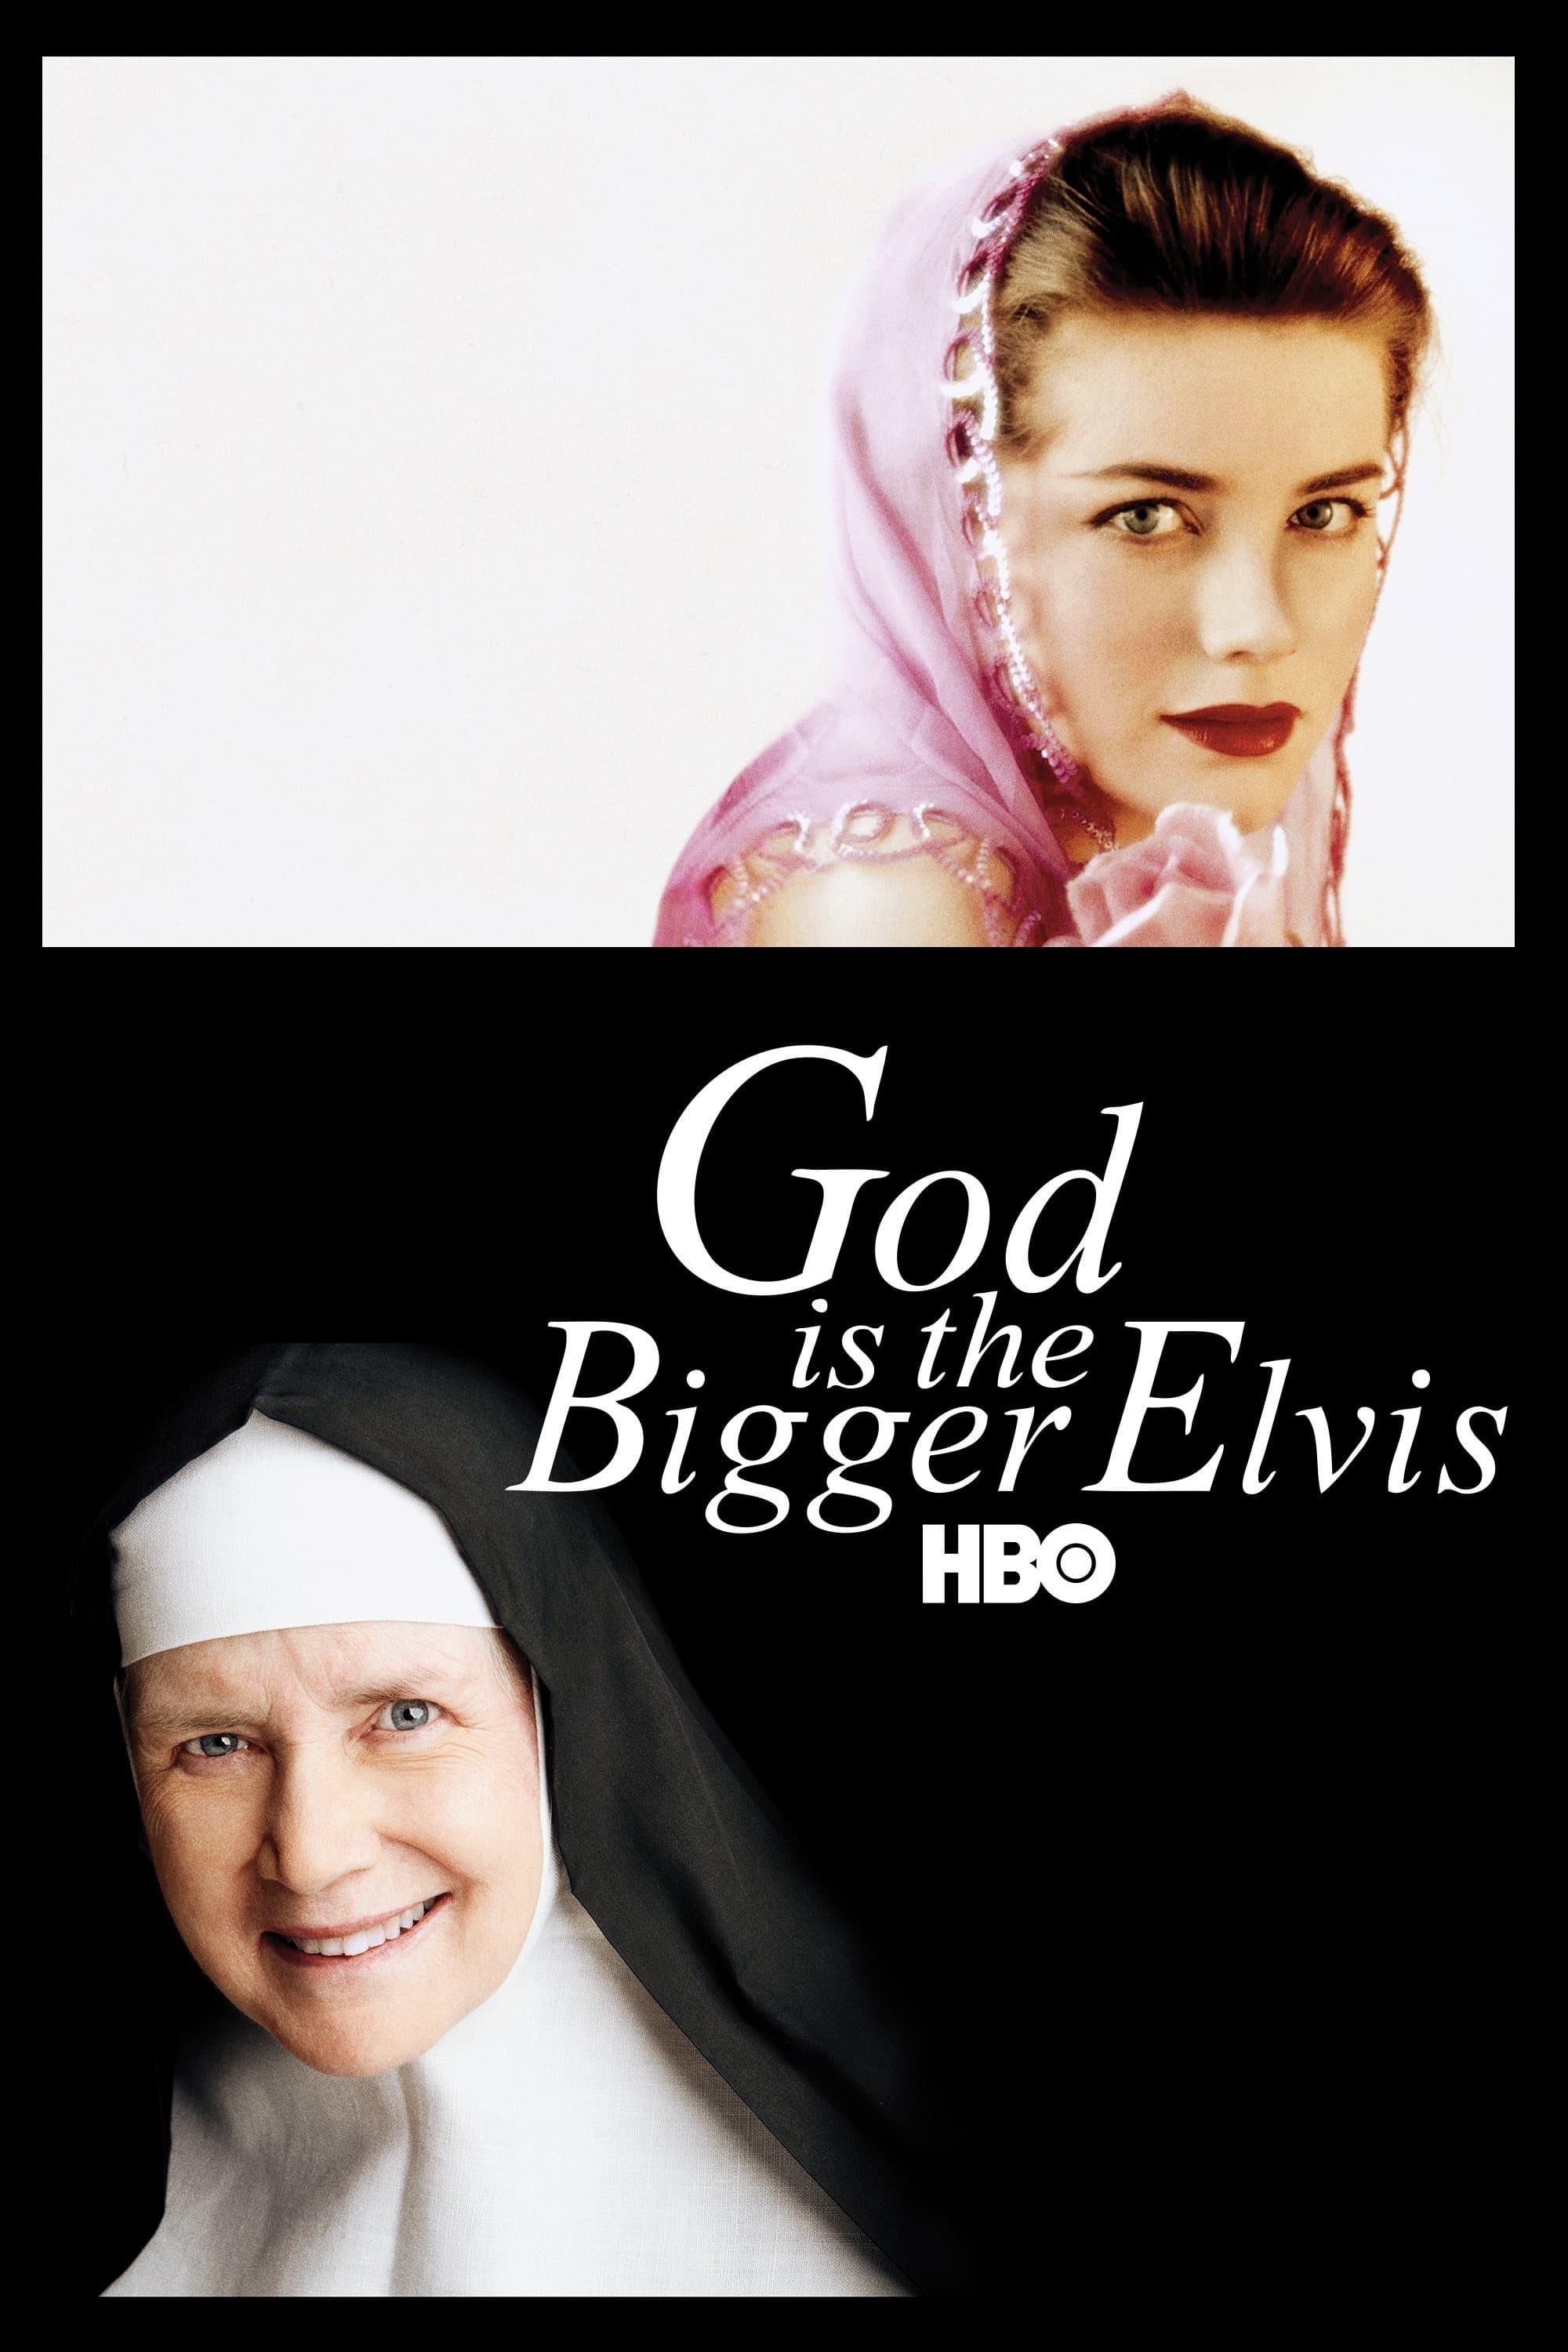 Gott ist größer als Elvis poster